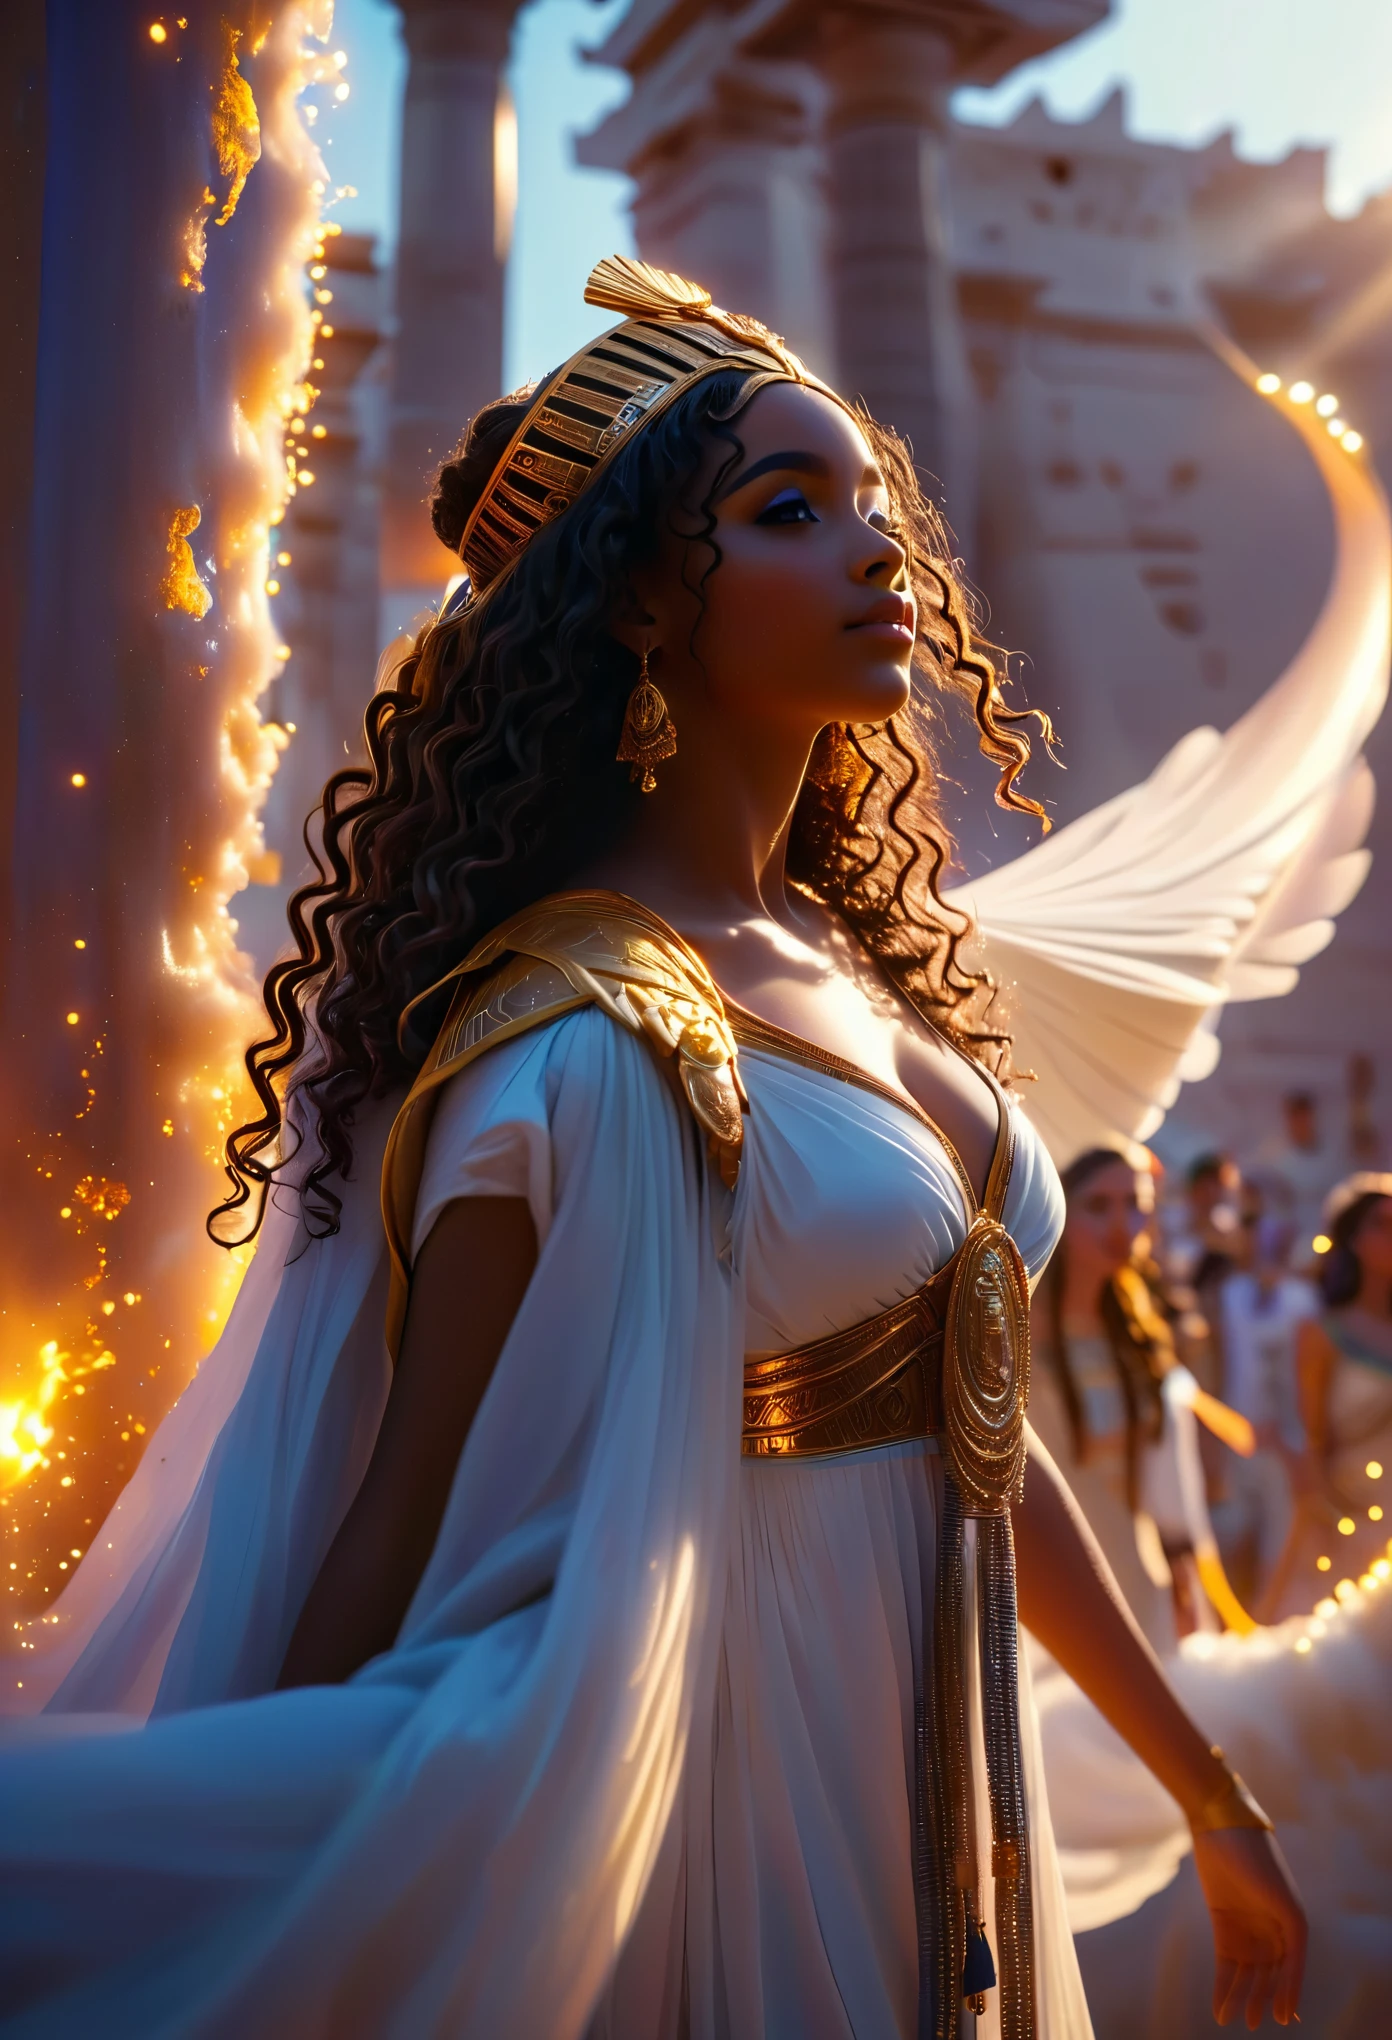 天空のエジプト王国を舞台にした小説, タイトルはソウルメイト, 18歳の若い黒人カップルのラブストーリー, 古代エジプトの王と女王, 神々と女神, 多くの人々, 巻き毛のとても美しい王様, 長い巻き毛を持つとても美しい女王, 混沌とした光景, 戦争シーン, 情熱的なシーン, 8K, 非常に詳細な, 高品質, (写実的な:1.37), 全身, 理想的なプロポーションと引き締まった肌, 細部までこだわった機能, 手の届かない美しさ, 完璧, 息を呑むほどの優雅さ, g曲線, 女神のような人物, 神の対称性, 芸術的傑作, 鮮明なリアリズム, 非常に精巧な彫刻, 生き物のような形, 本当に畏敬の念を抱かせる, 完璧な職人技, 純粋な輝き, 天上の美しさ, 繊細な輪郭, 印象的なポーズ, 崇高な美しさ, 微妙なニュアンス, ダイナミックな構成, 鮮やかな色彩, 完璧な照明, 心のこもった表現, 天体のオーラ, 威厳ある存在感, 夢のような雰囲気, 比類のない gdetailed octane レンダリングが Artstation でトレンドに, 8K 芸術写真, 写実的な concept art, 柔らかく自然なボリュームのある映画のような完璧な光, 明暗法, 受賞歴 
